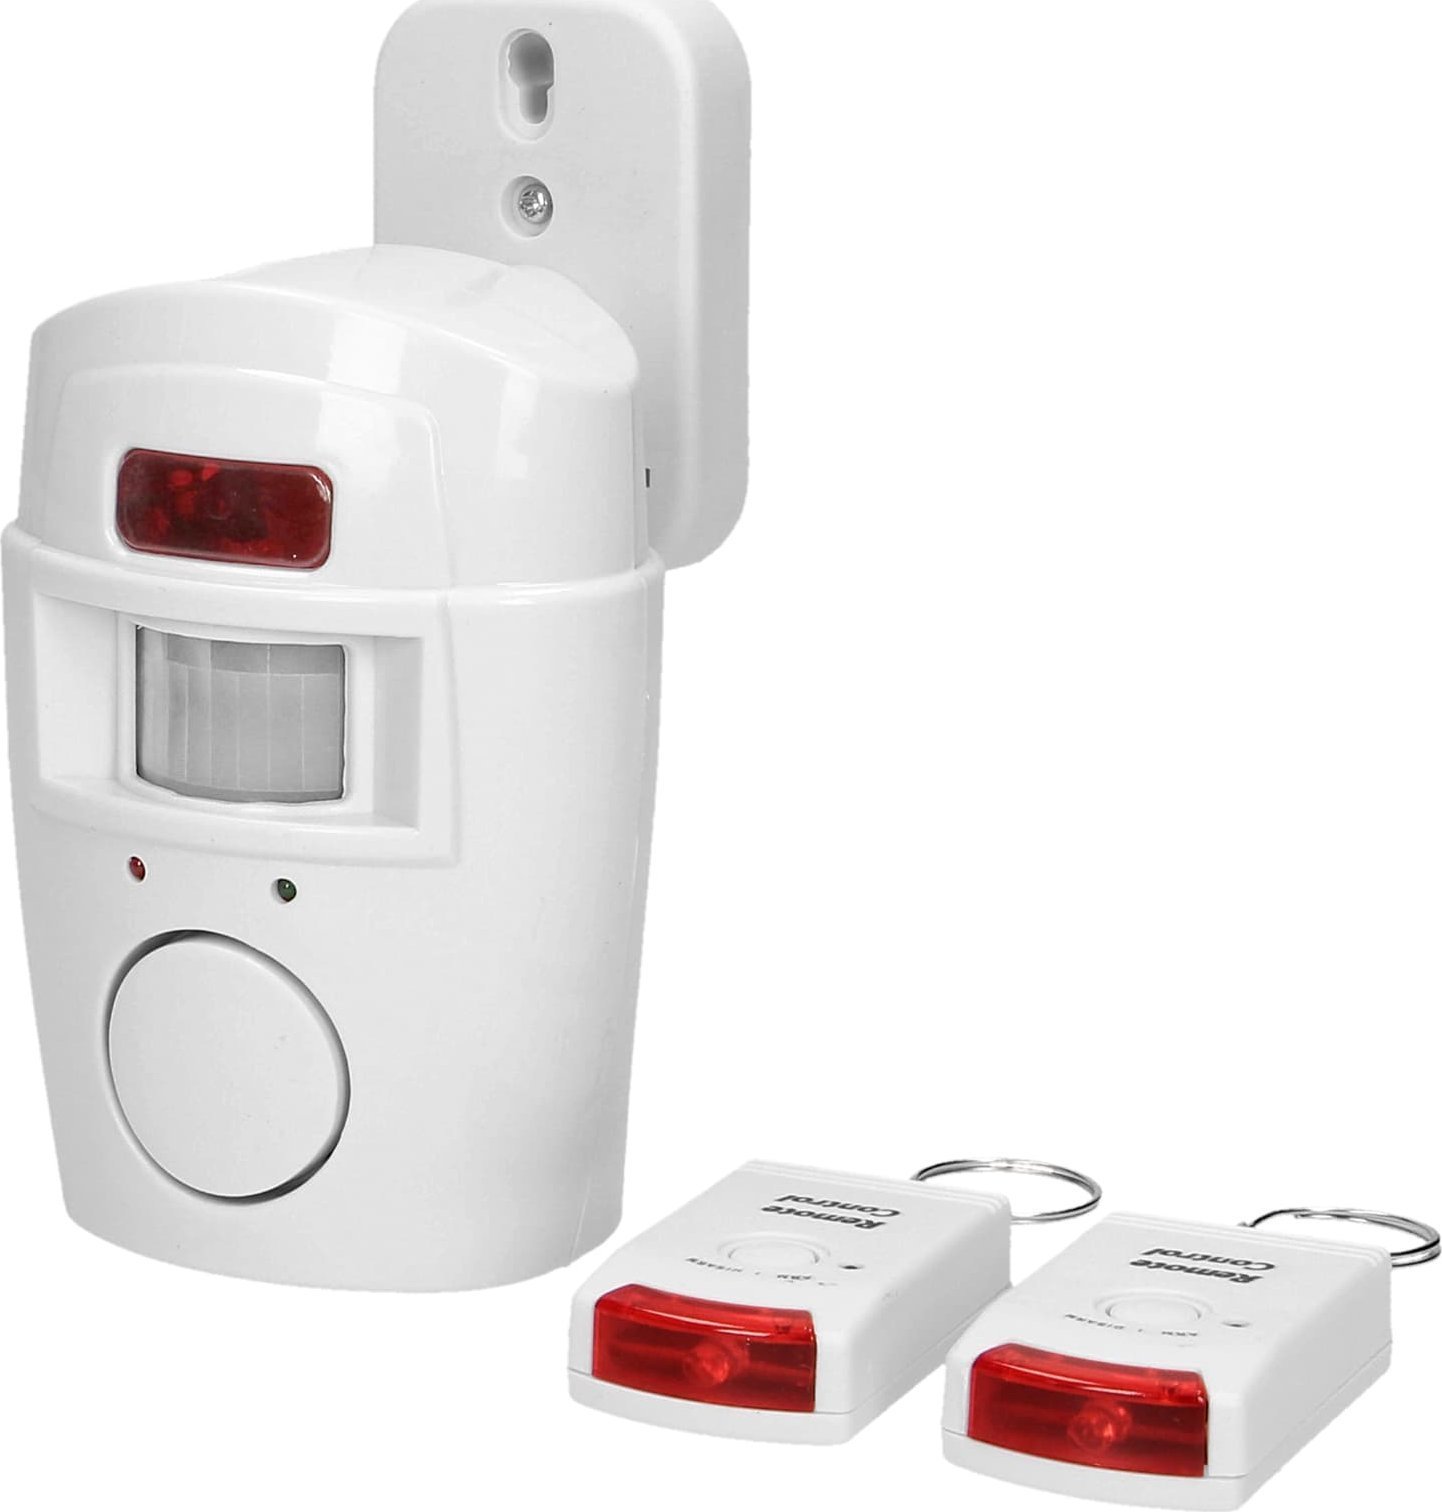 Alarma wireless Orno Mini cu sirena incorporata, telecomanda, 6m, baterie, 2 telecomenzi, AS-1